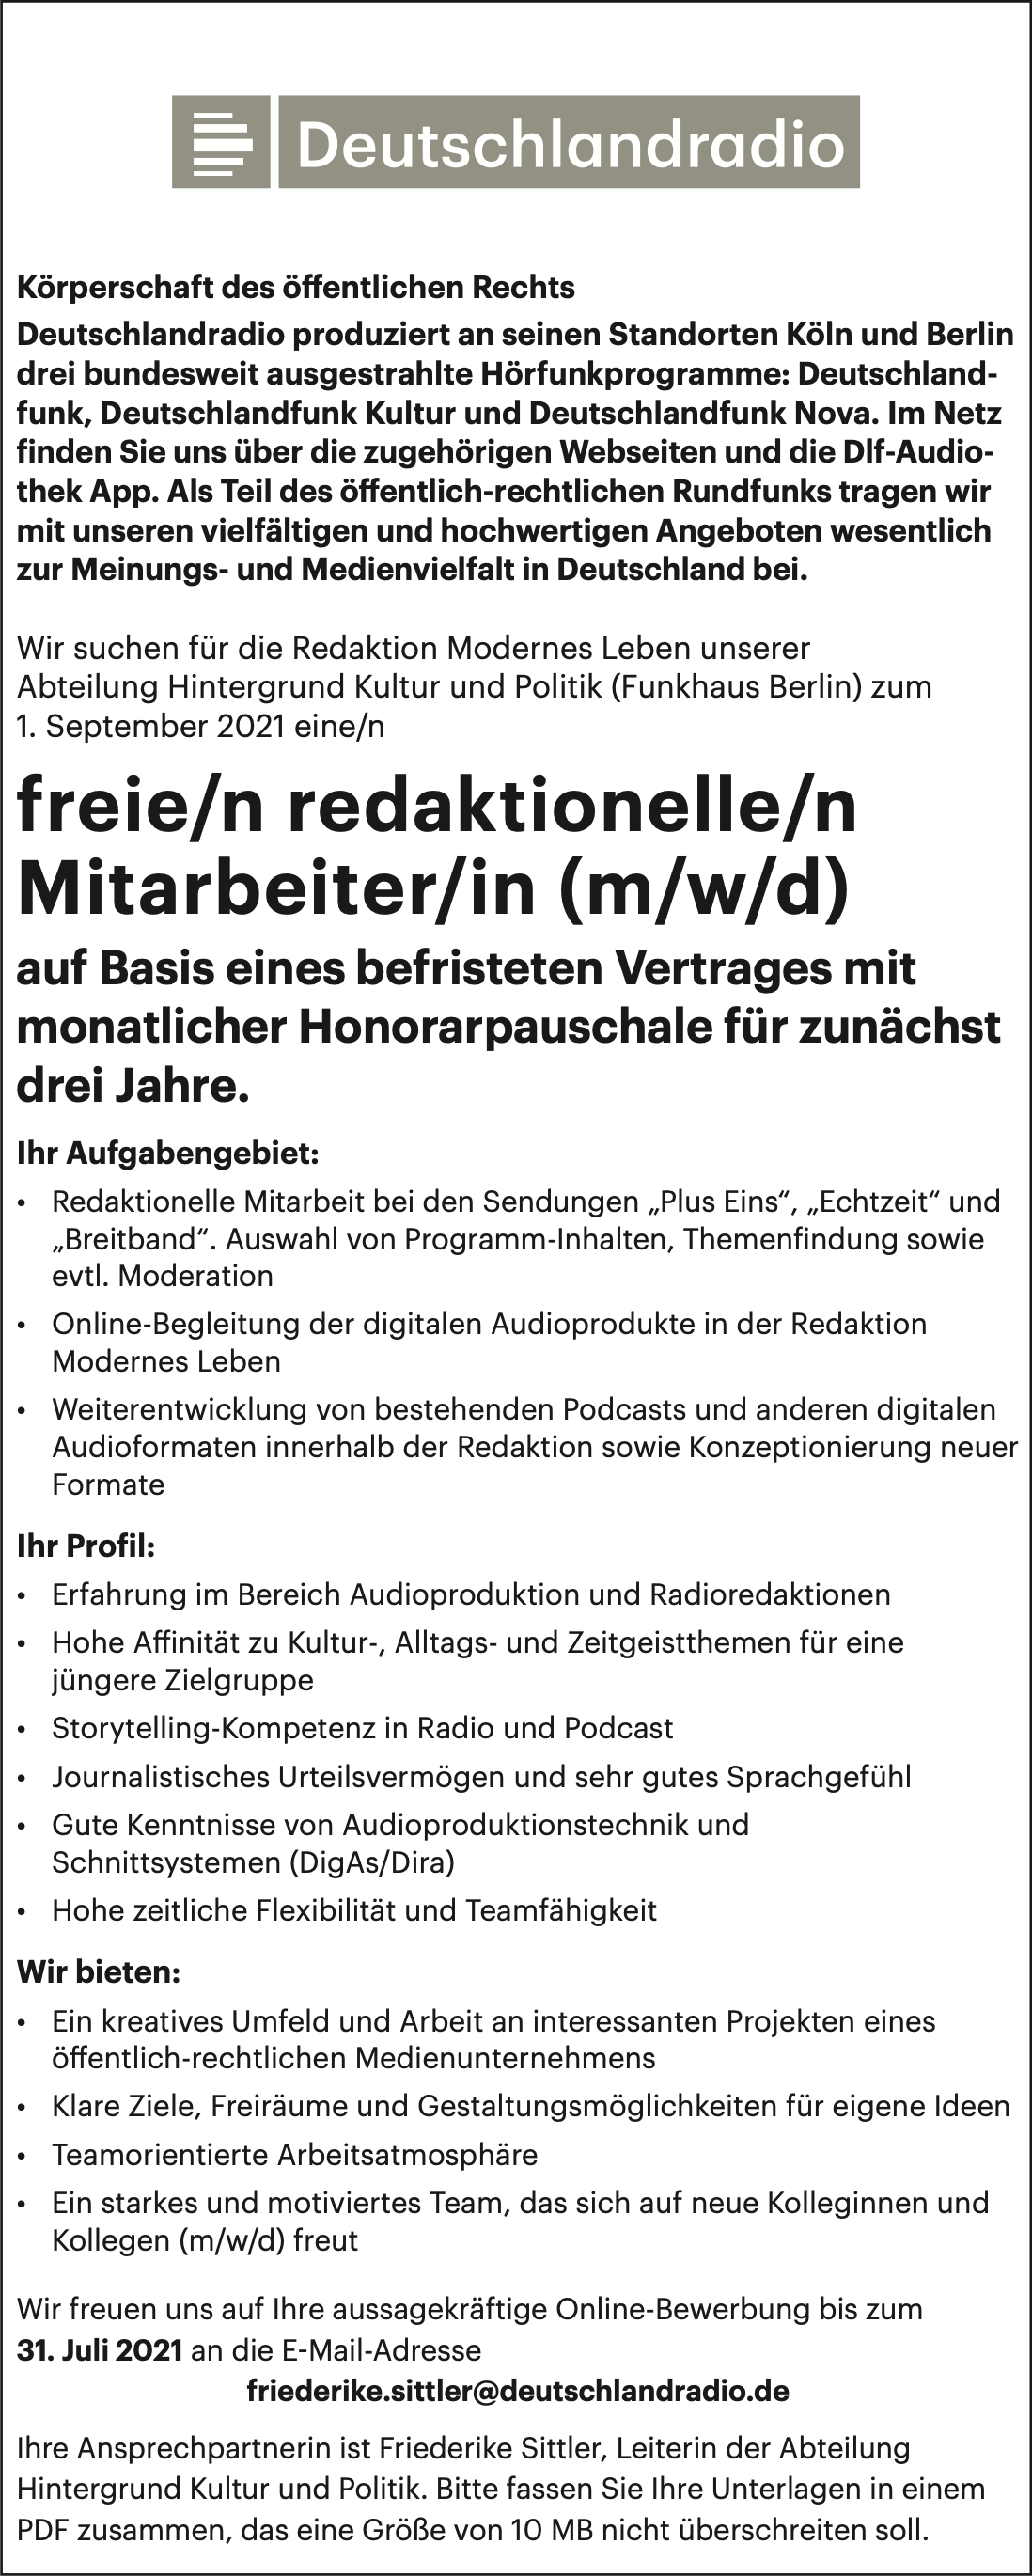 Deutschlandradio Freie redaktionelle Mitarbeiter 120721